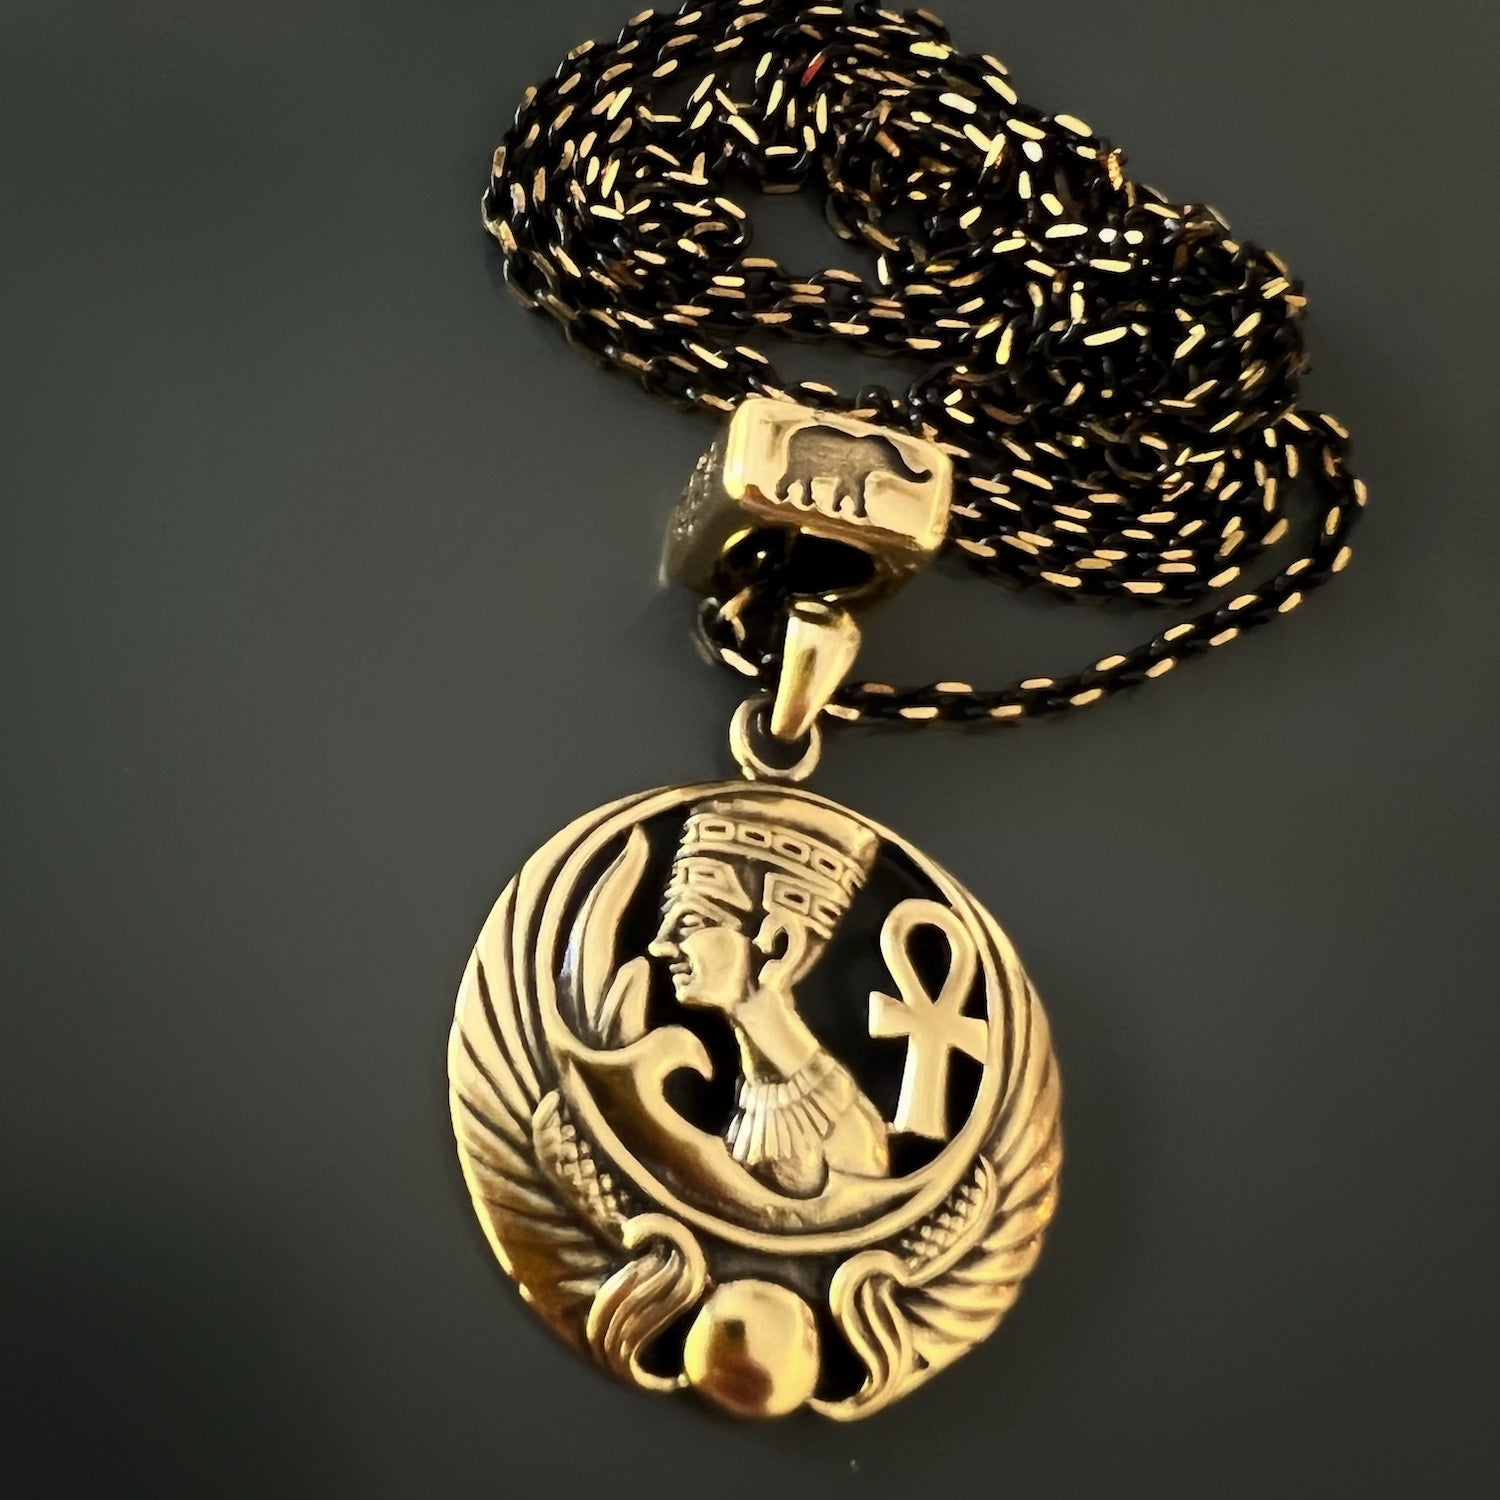 Intricately Designed Nefertiti Necklace with Symbolic Bead, symbolizing wisdom, good luck, and protection.